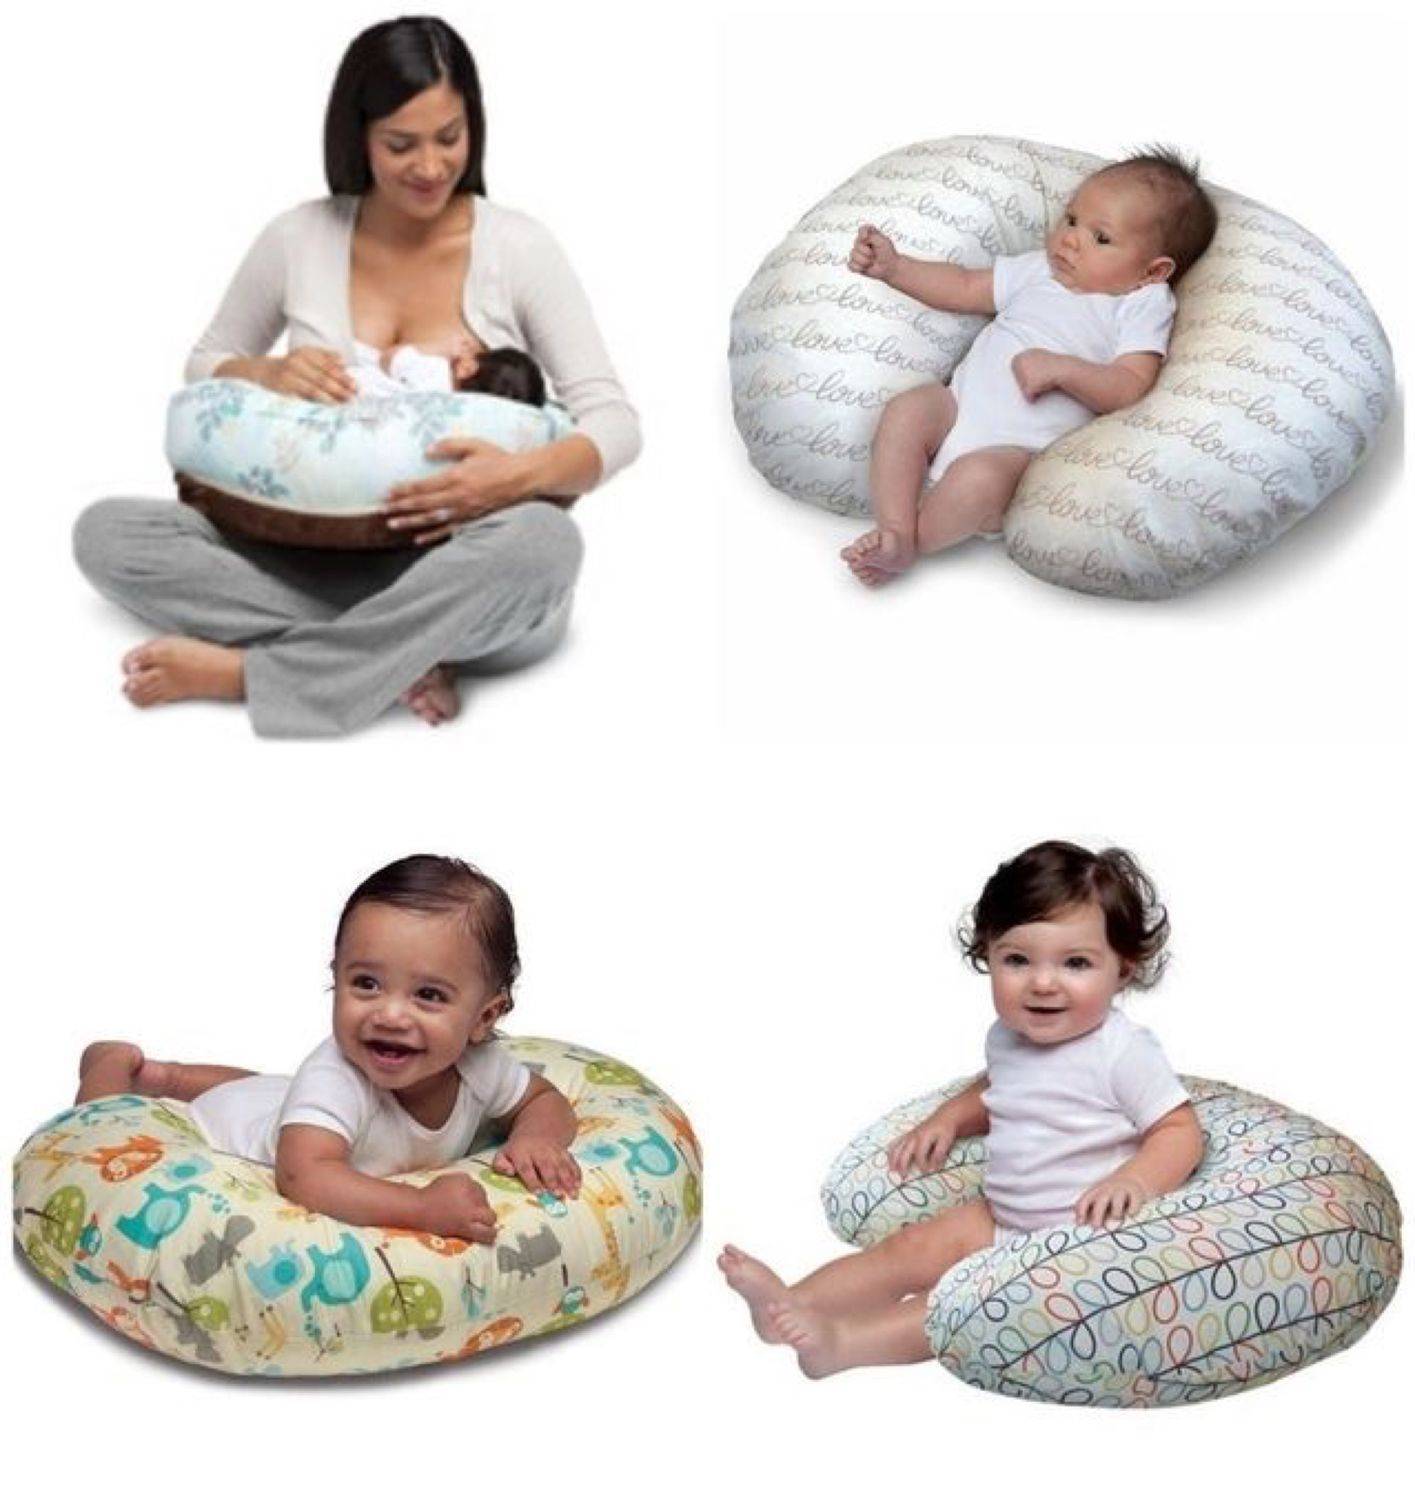 Подушка для новорожденных: нужна ли подушка новорожденному, особенностей развития детского позвоночника, размеры